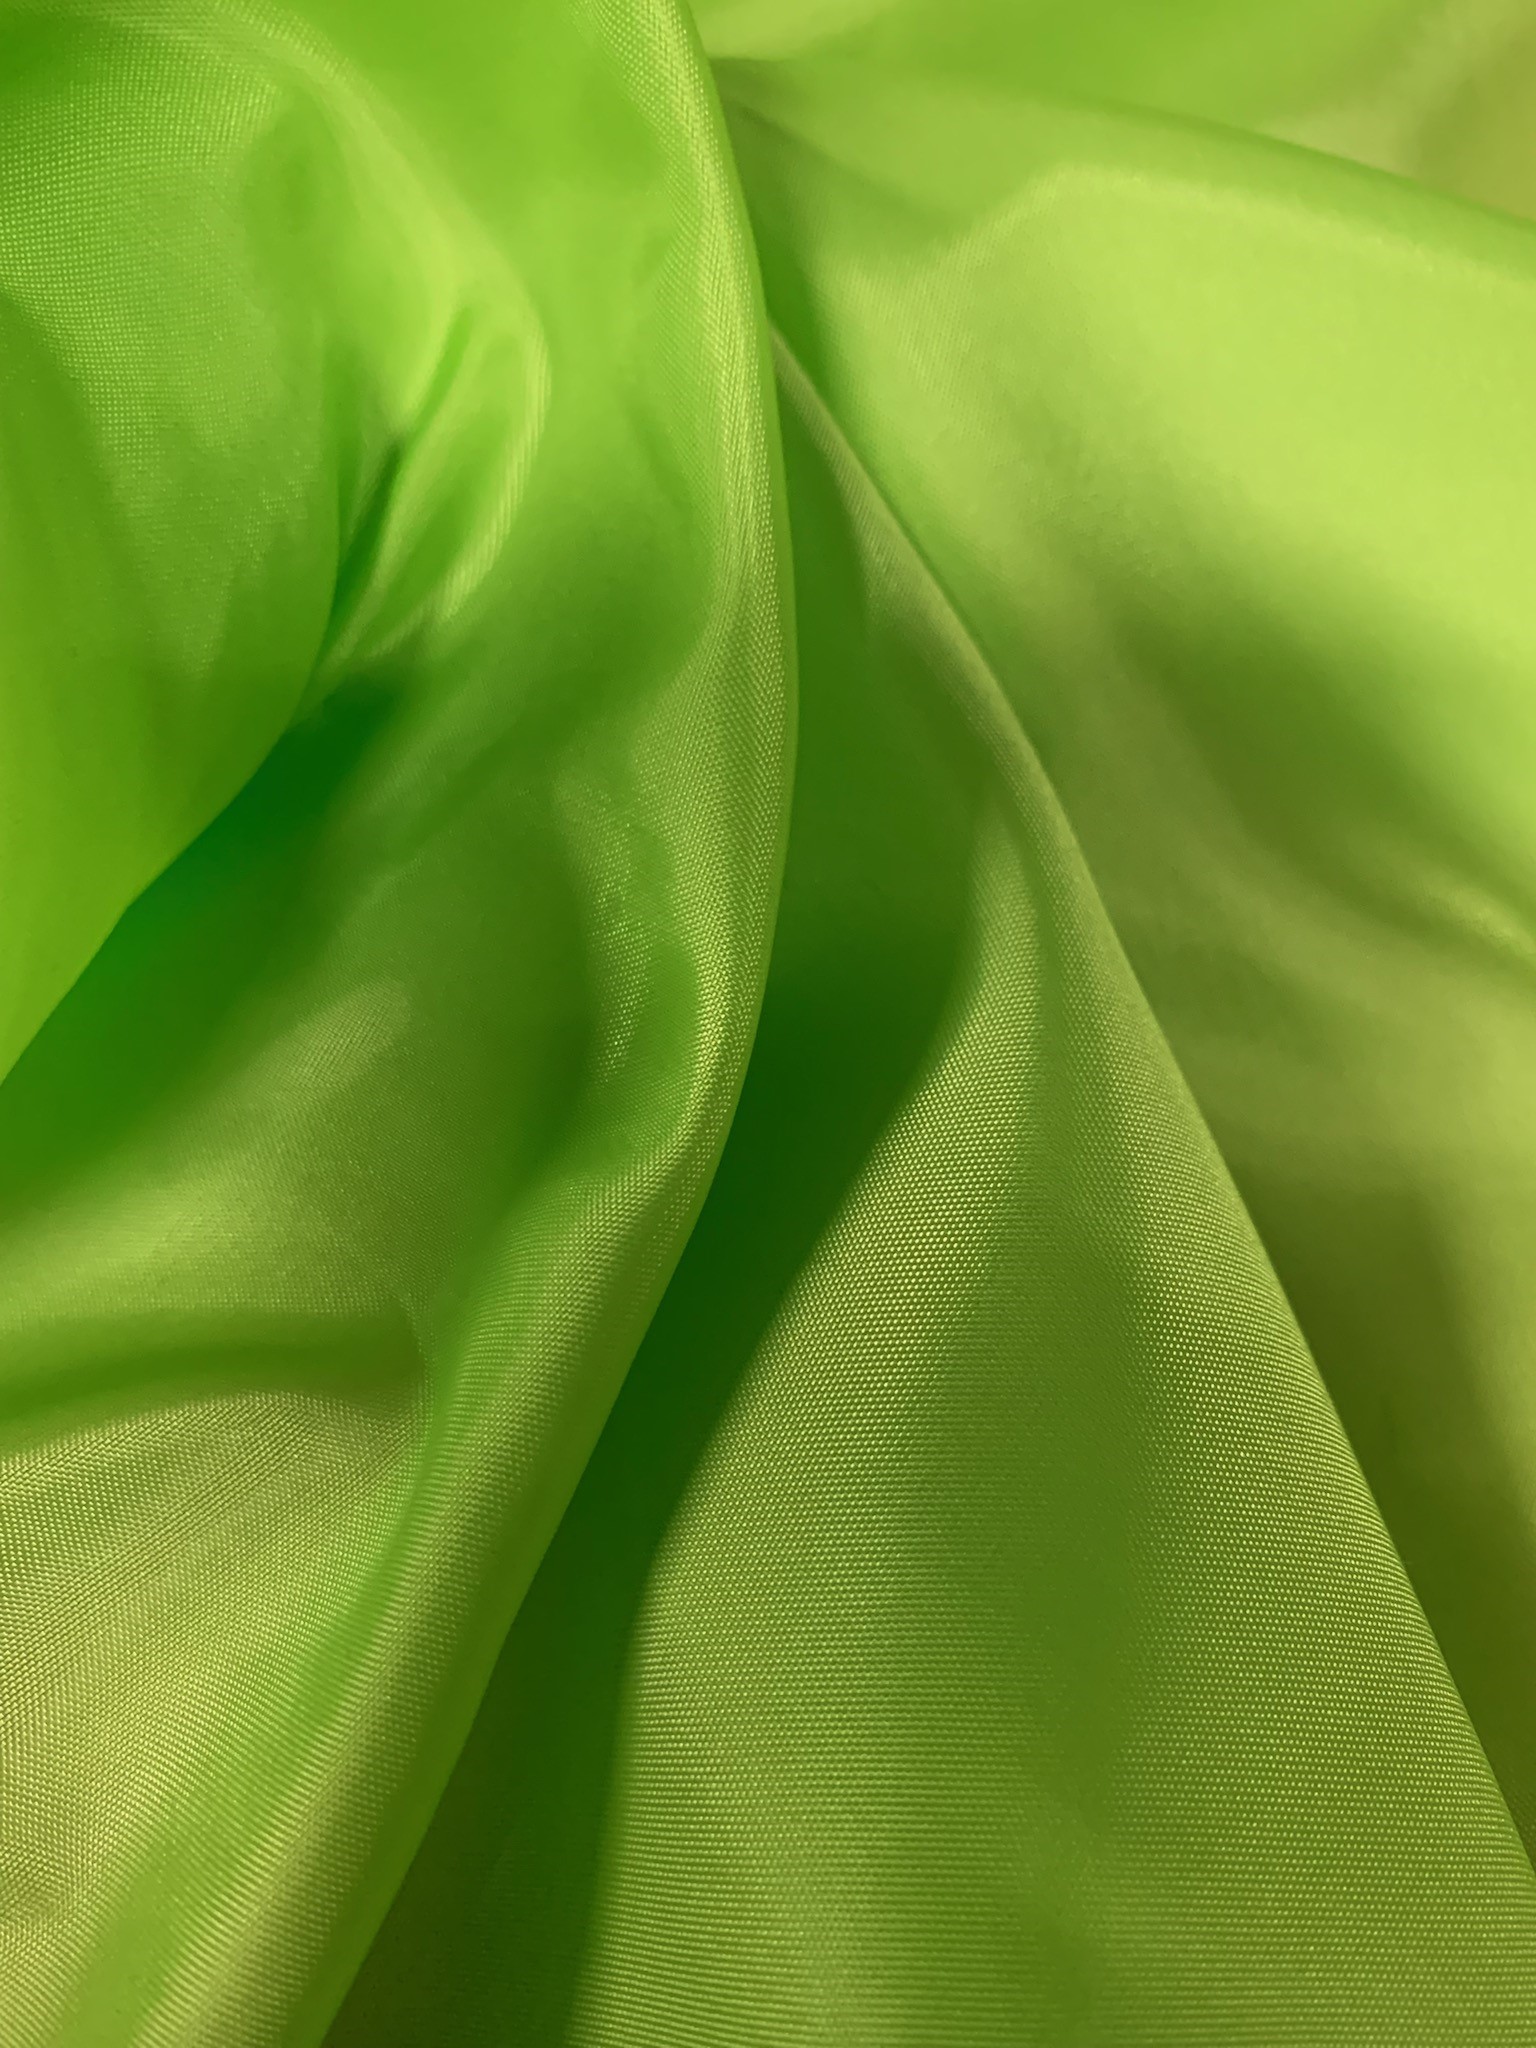 60" Lime Power Mesh Fabric 80% Poly 20% Spandex Per Yard